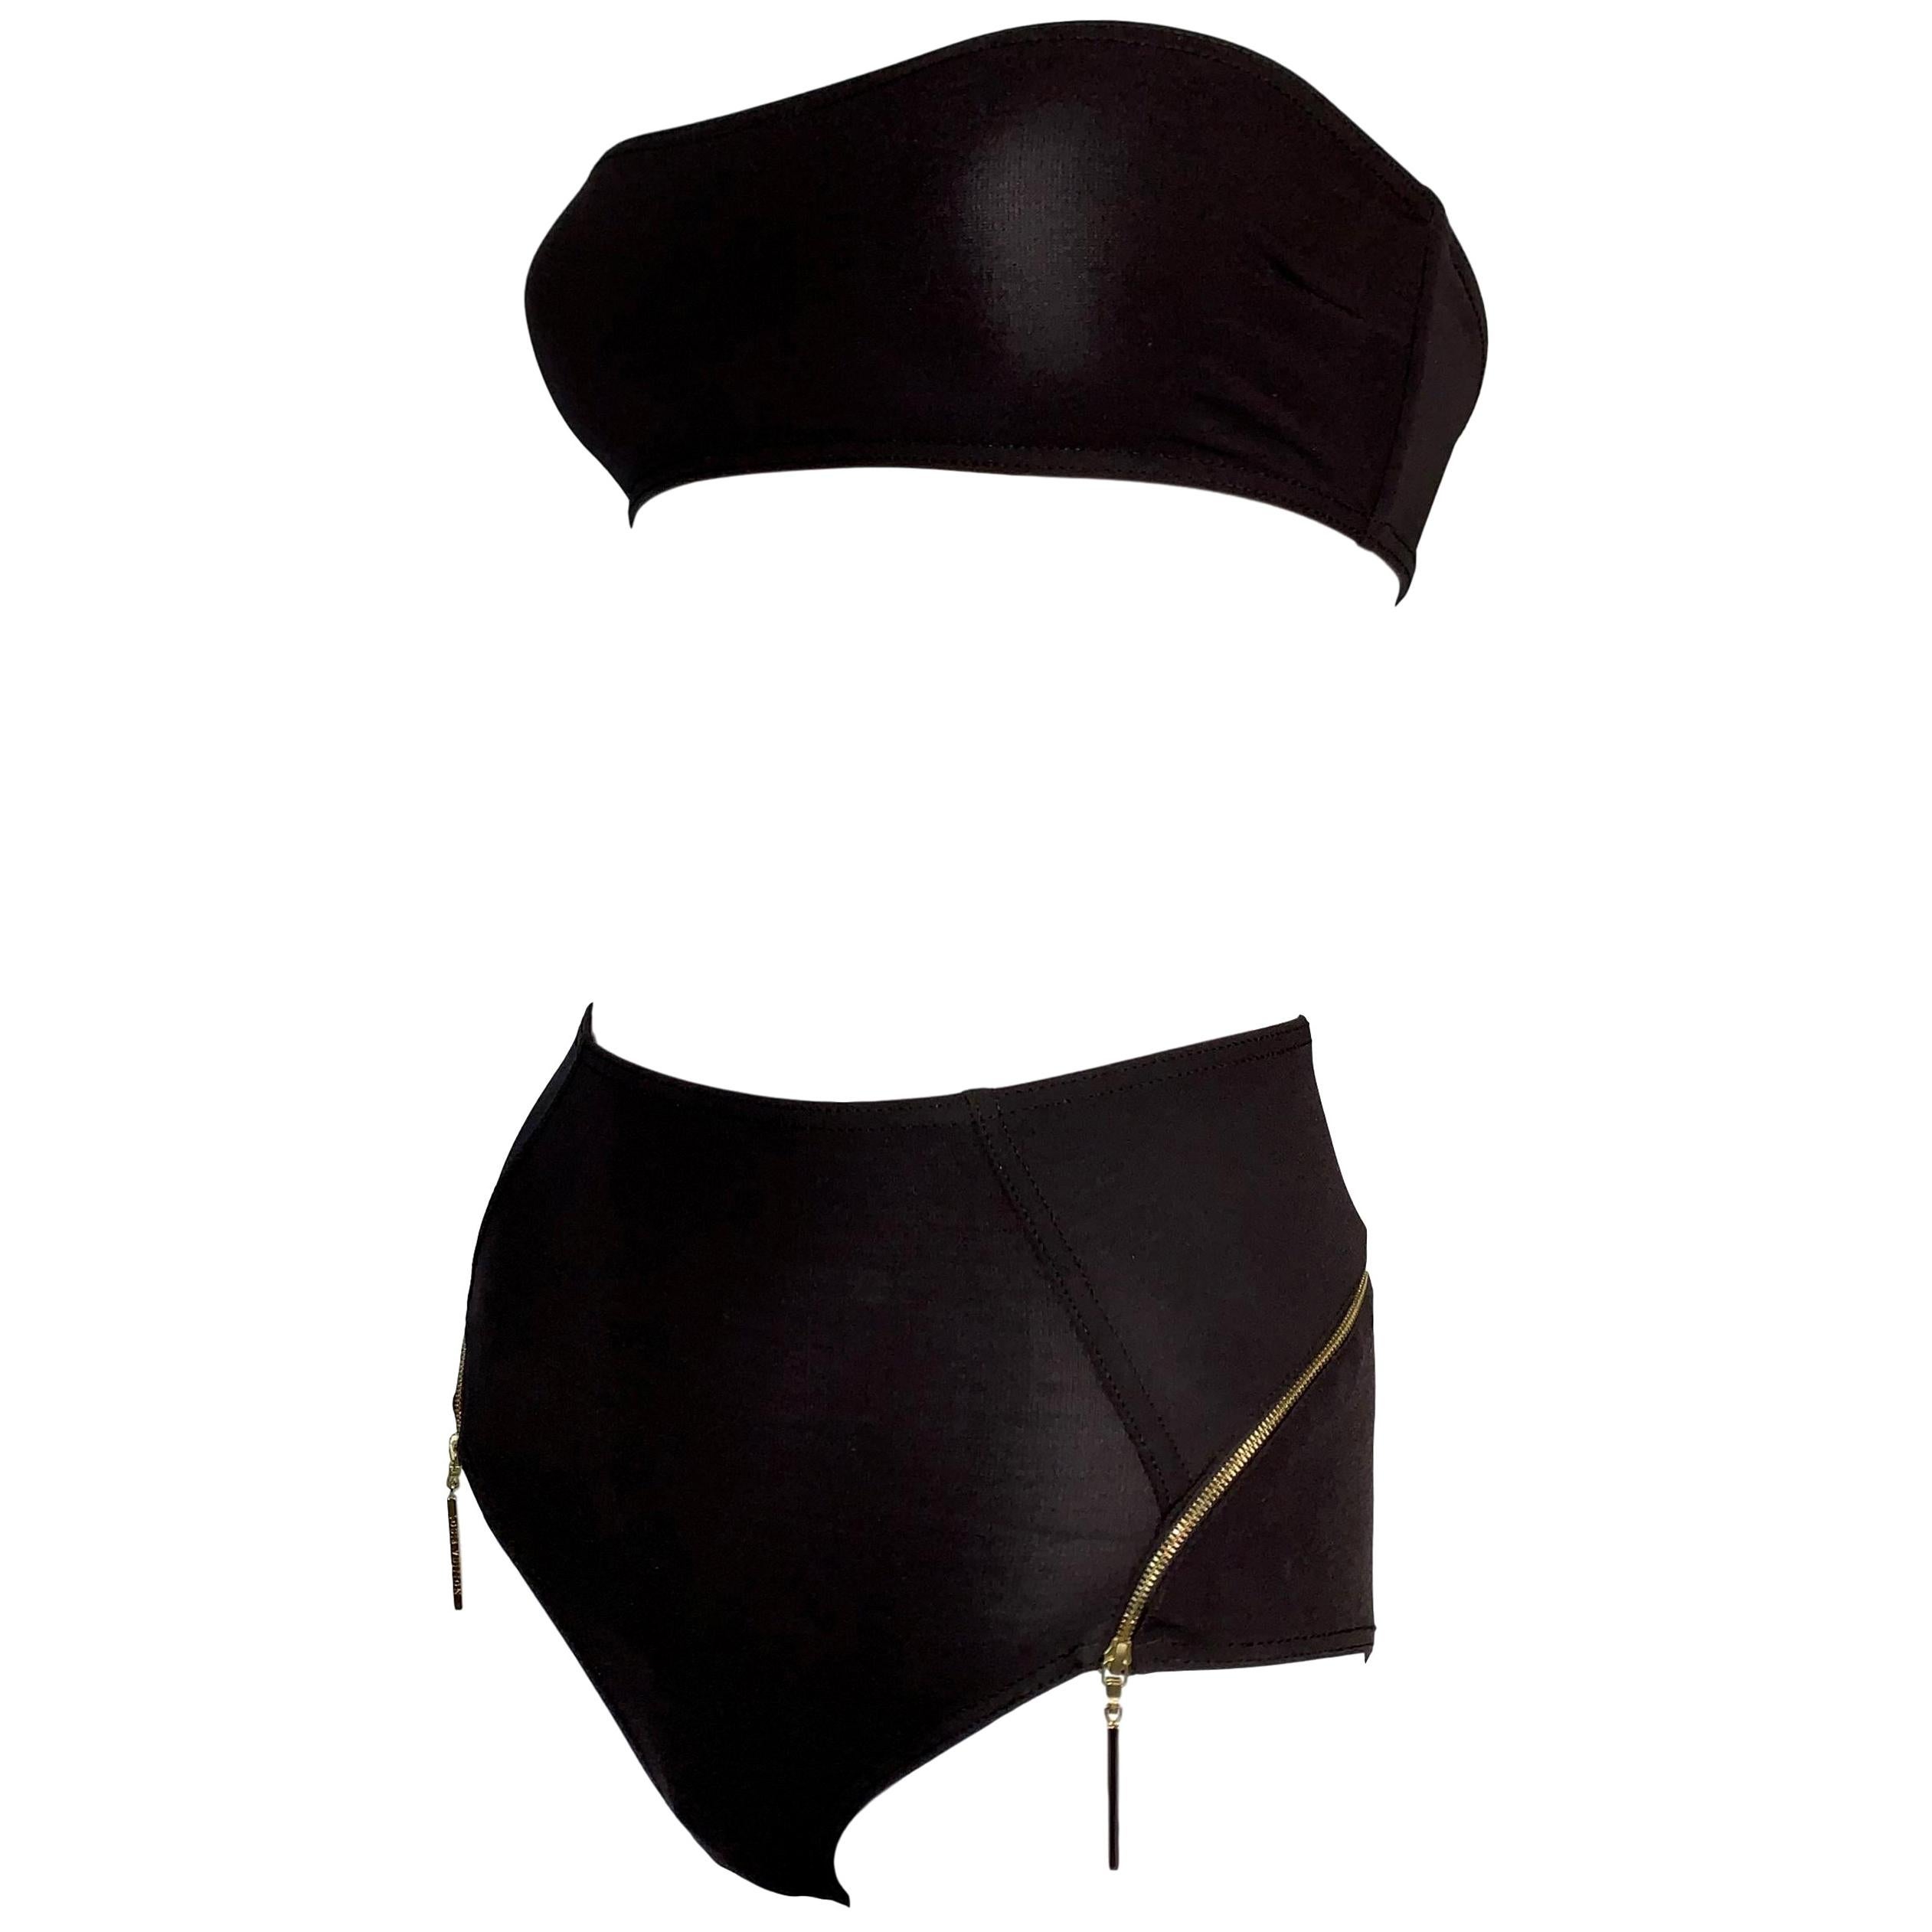 Louis Vuitton Bikini Brown - 4 For Sale on 1stDibs